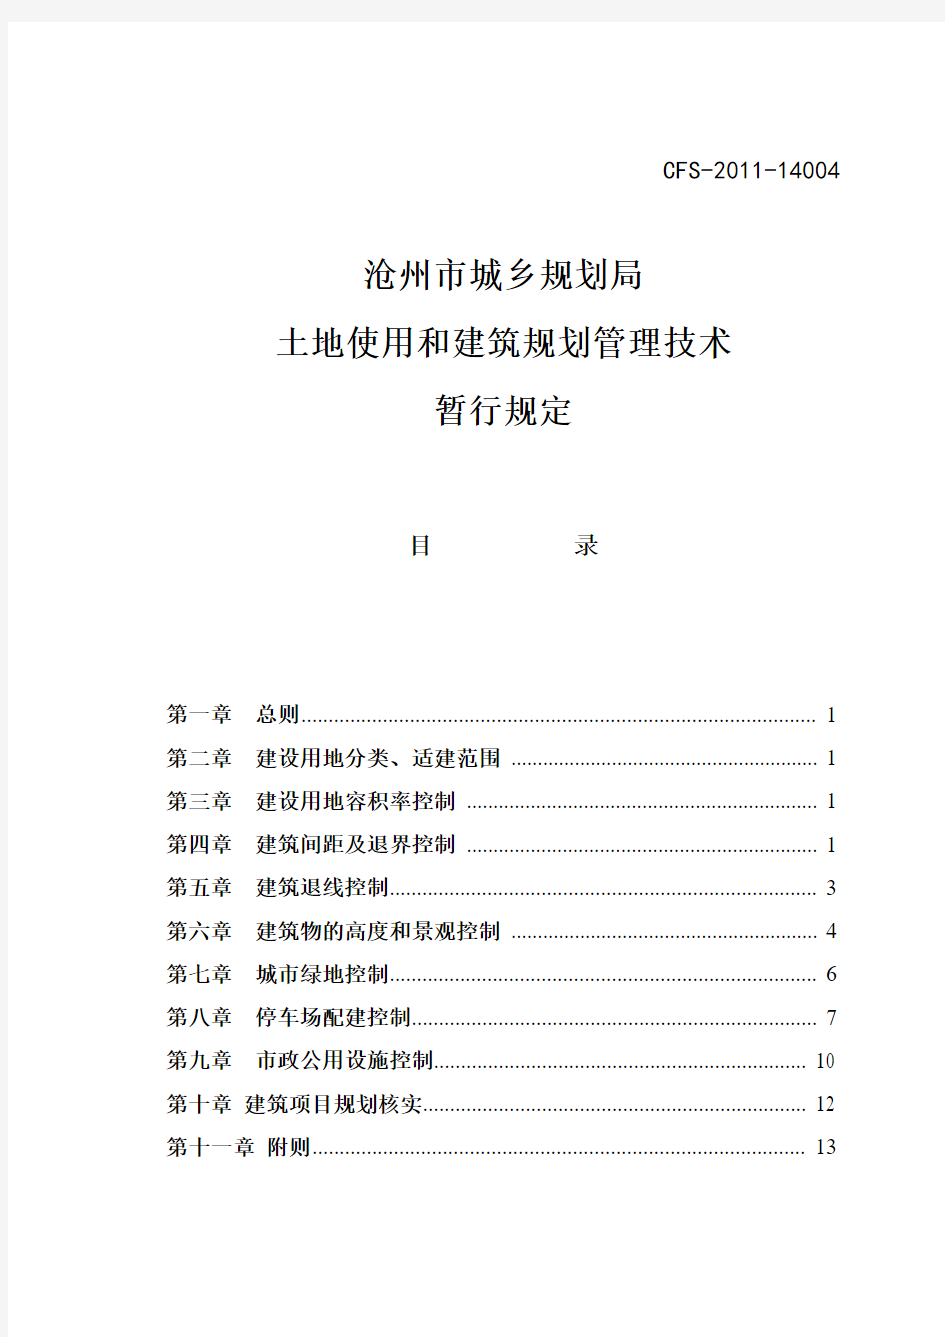 沧州市城乡规划局：土地使用和建筑规划管理技术规定